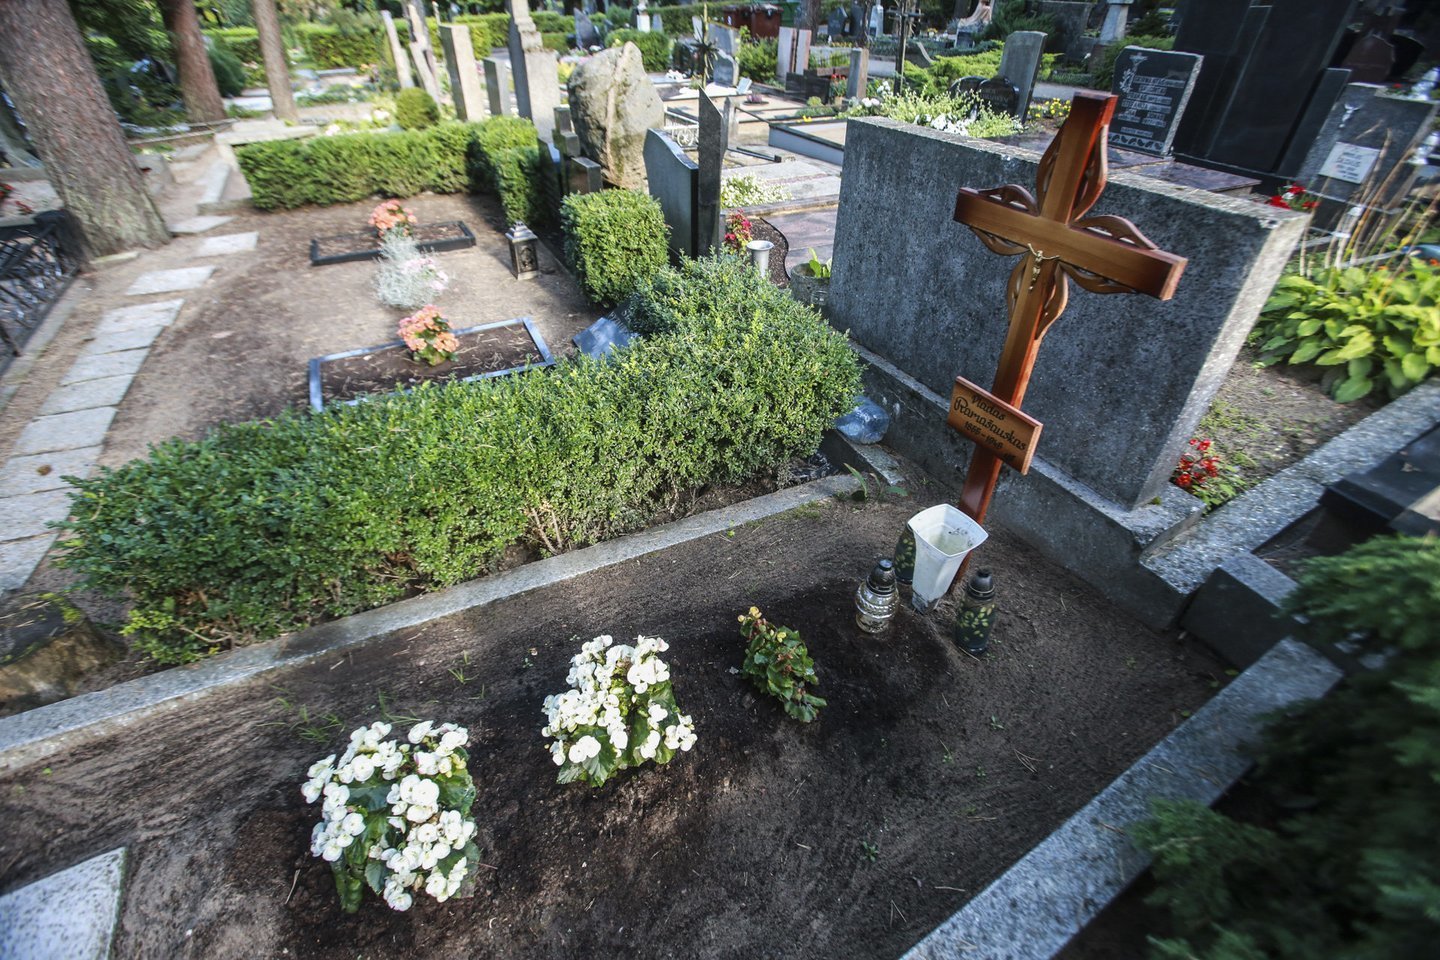  Kaune palaidoto V.Ramašausko kapo detektyvo istorijoje - permaininga sėkmė. <br> G.Bitvinsko nuotr.